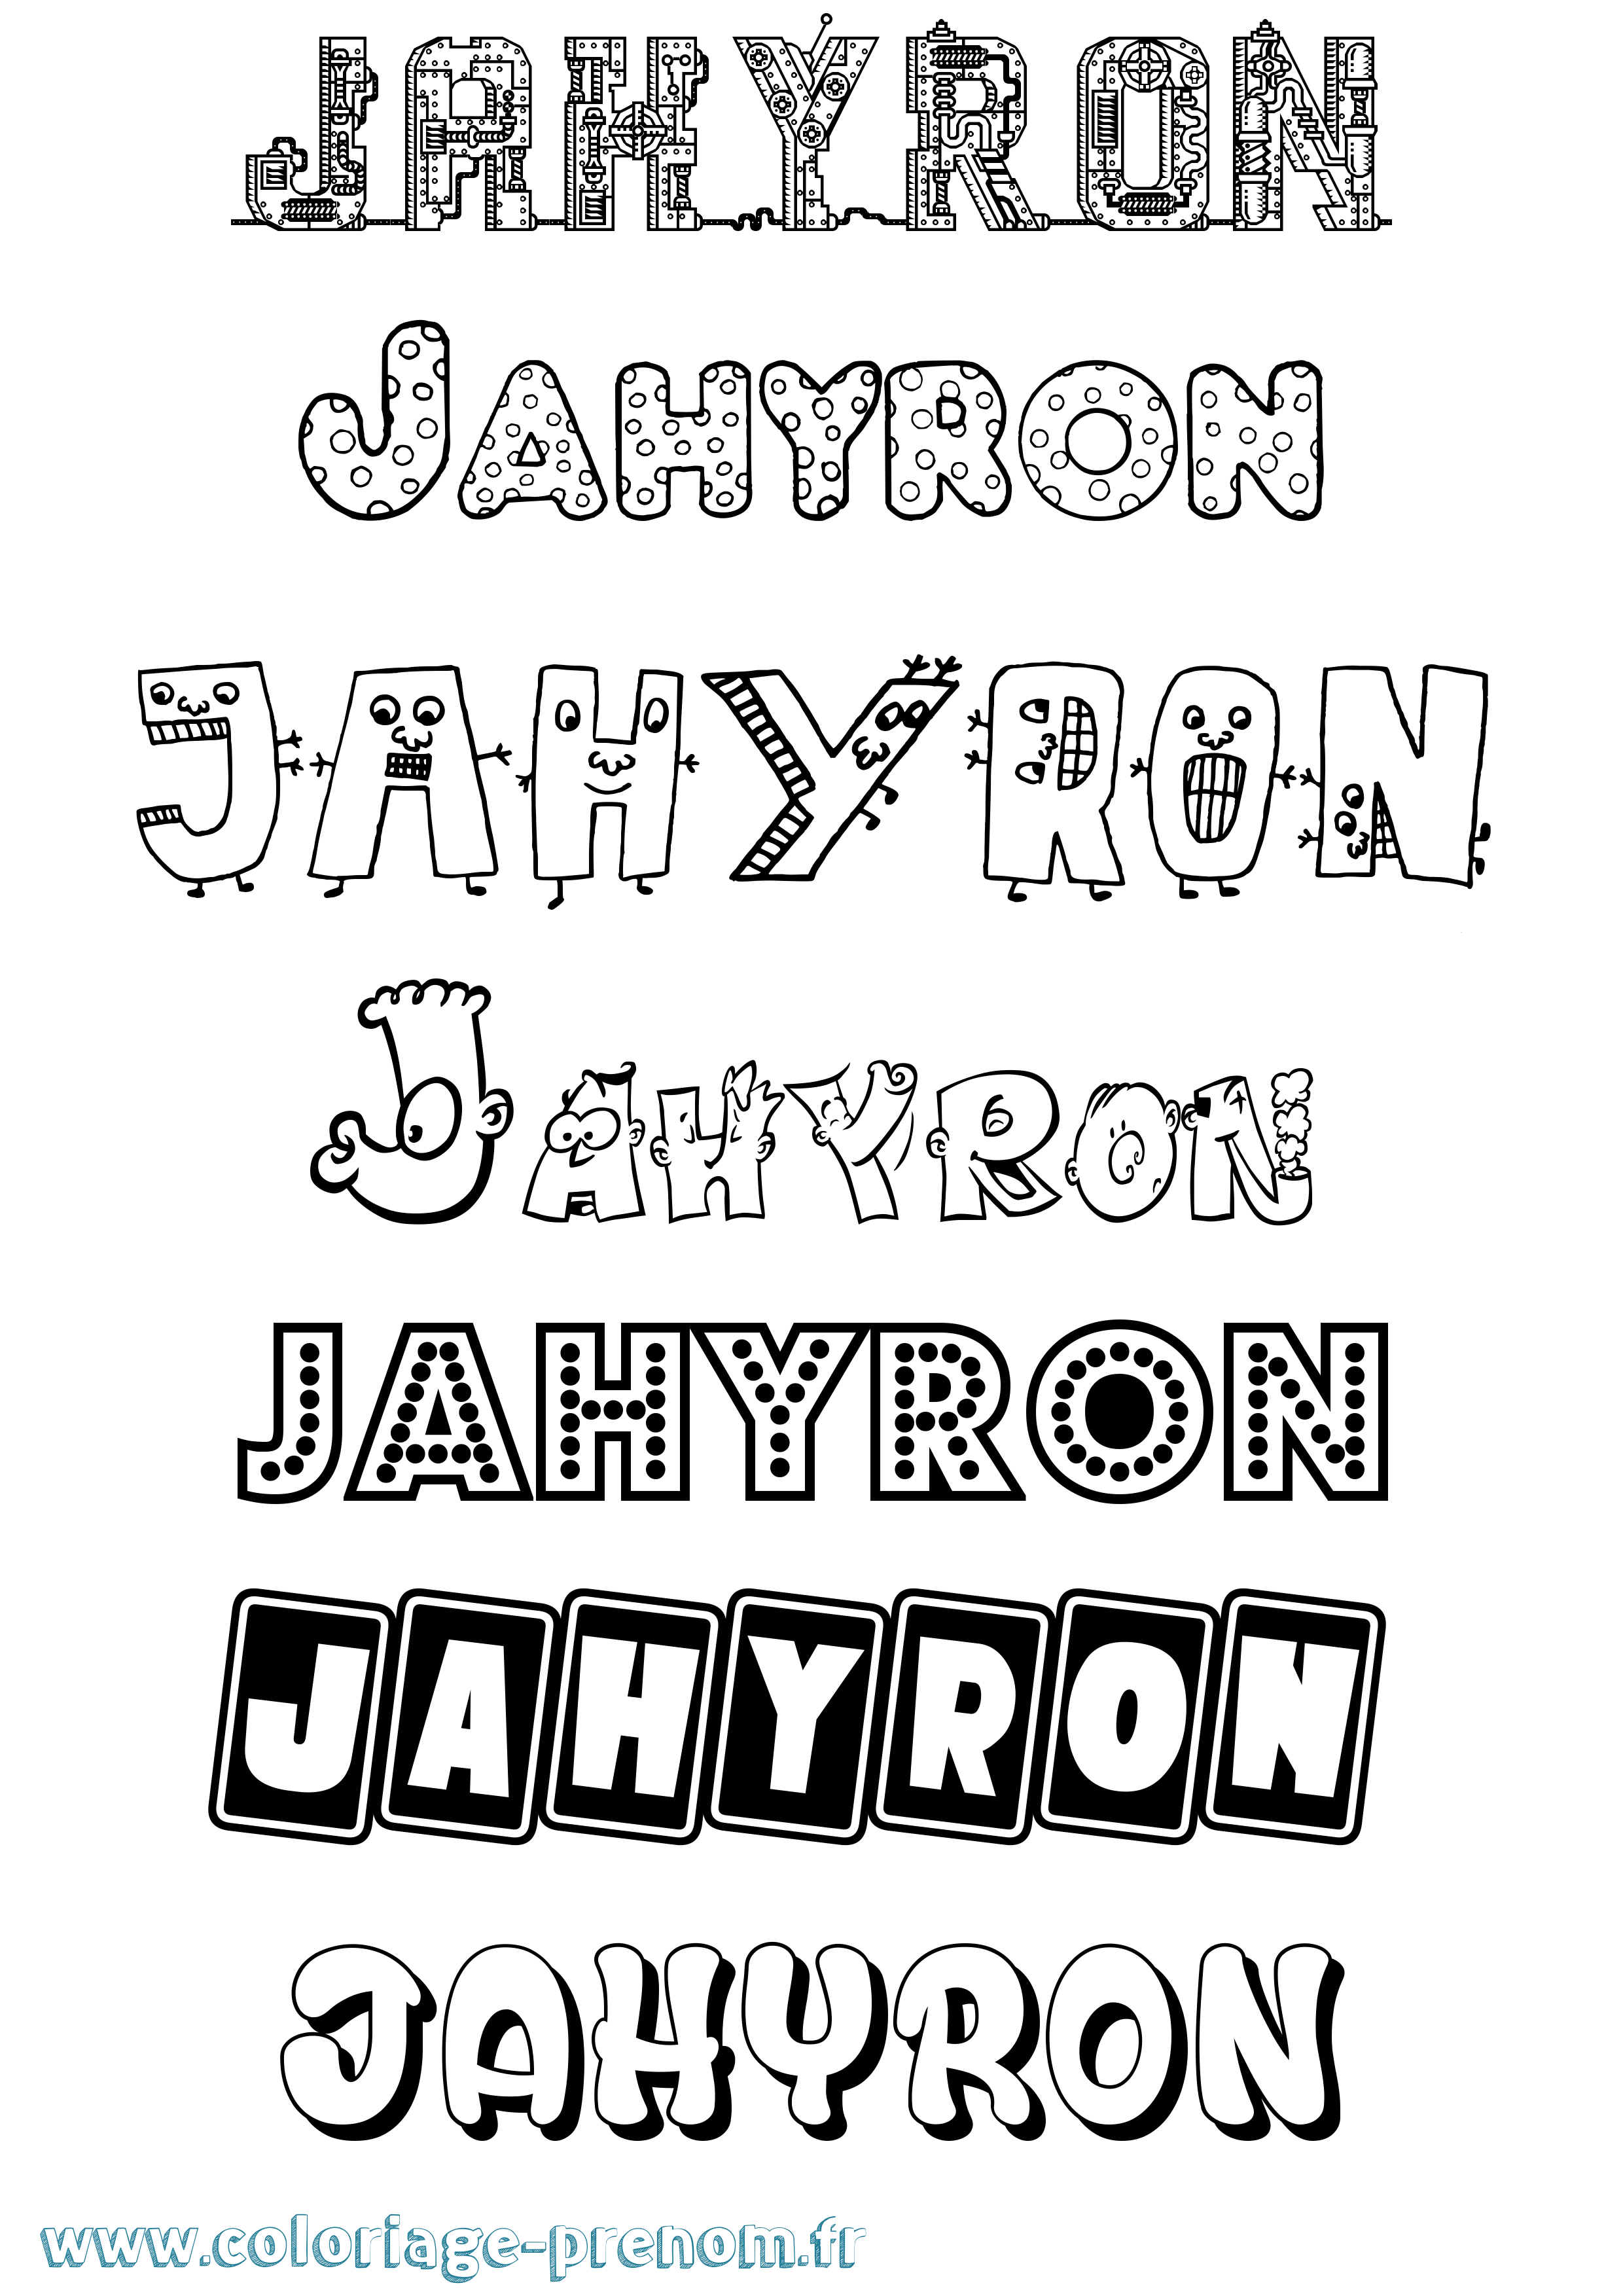 Coloriage prénom Jahyron Fun